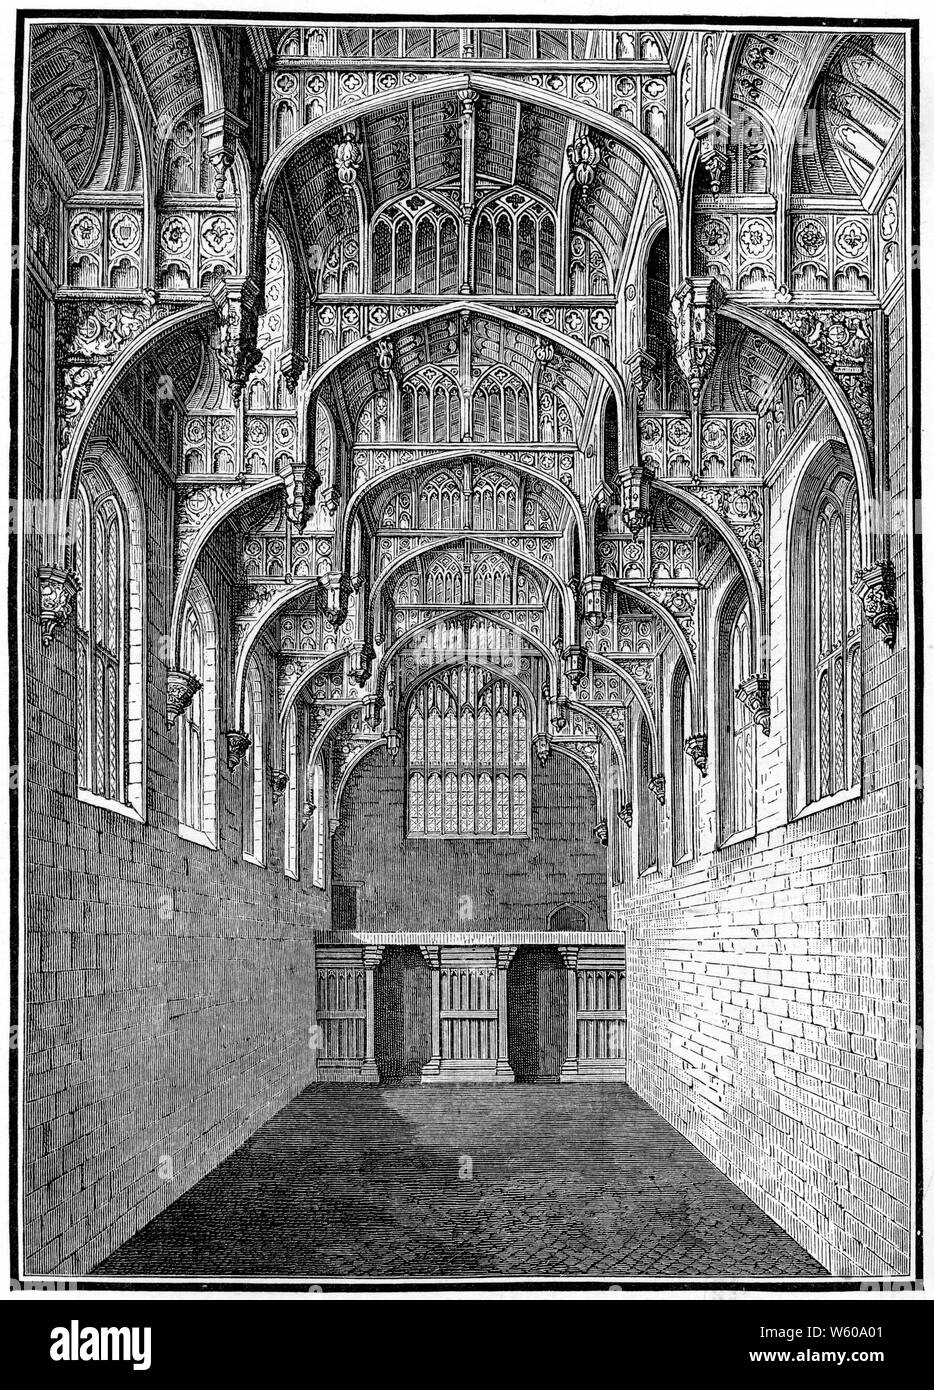 Grande salle, palais de Hampton court, c1900. Henry VIII a ajouté la Grande salle entre 1532 et 1535. Le Grand Hall a un toit en poutres de marteau sculptées et pendant les temps Tudor, c'était la pièce la plus importante du palais. Banque D'Images